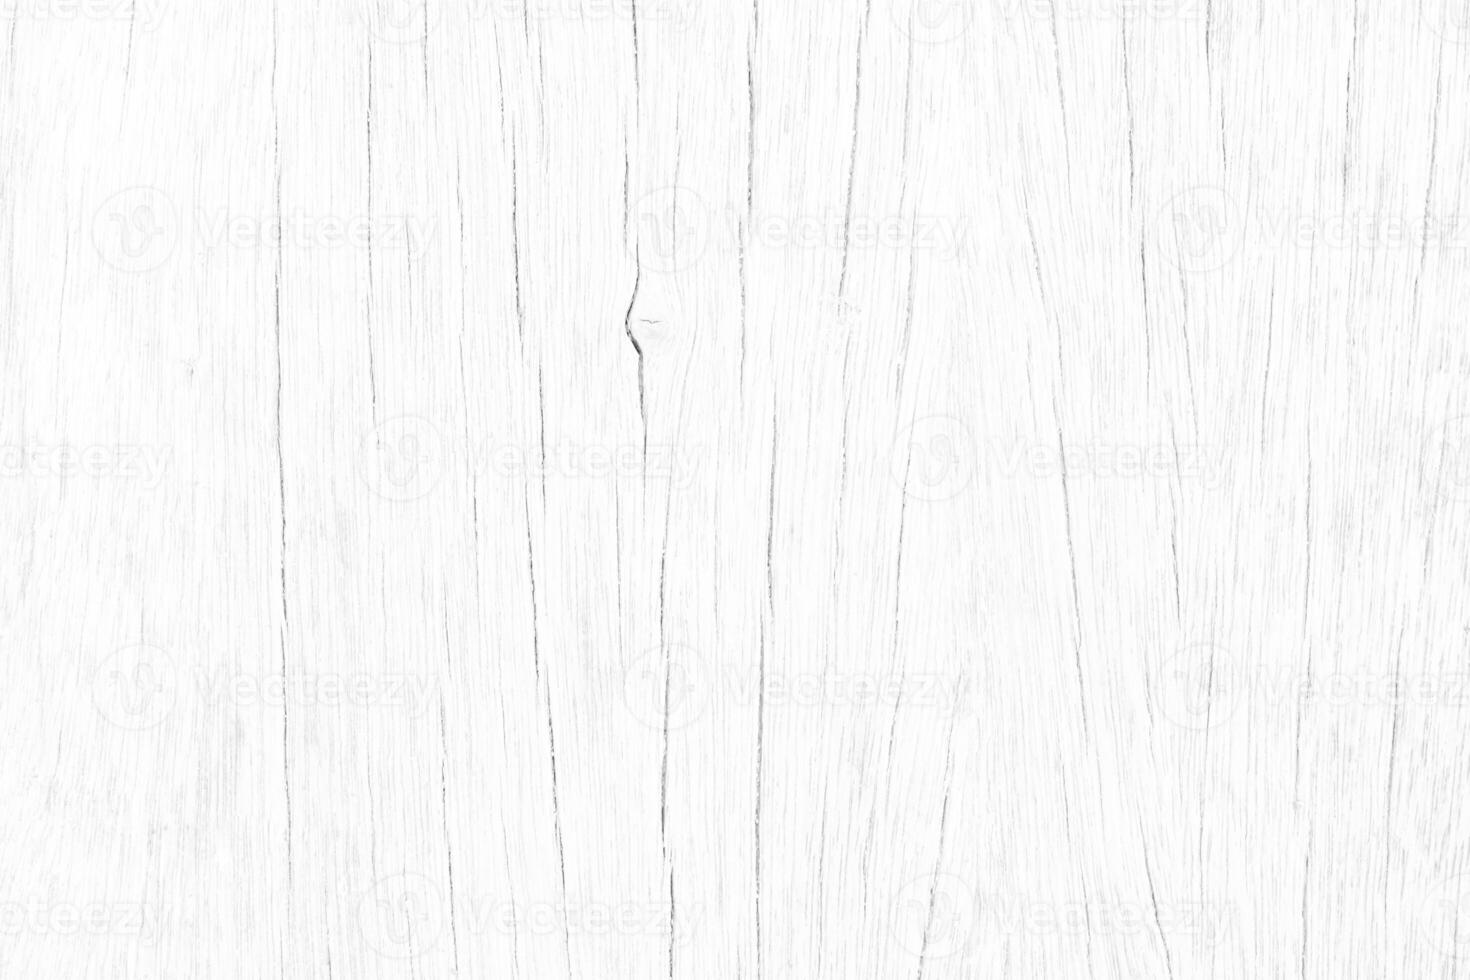 superfície de madeira padrão de cor branca clara ou grão de madeira áspero para textura e espaço de cópia no plano de fundo do design foto